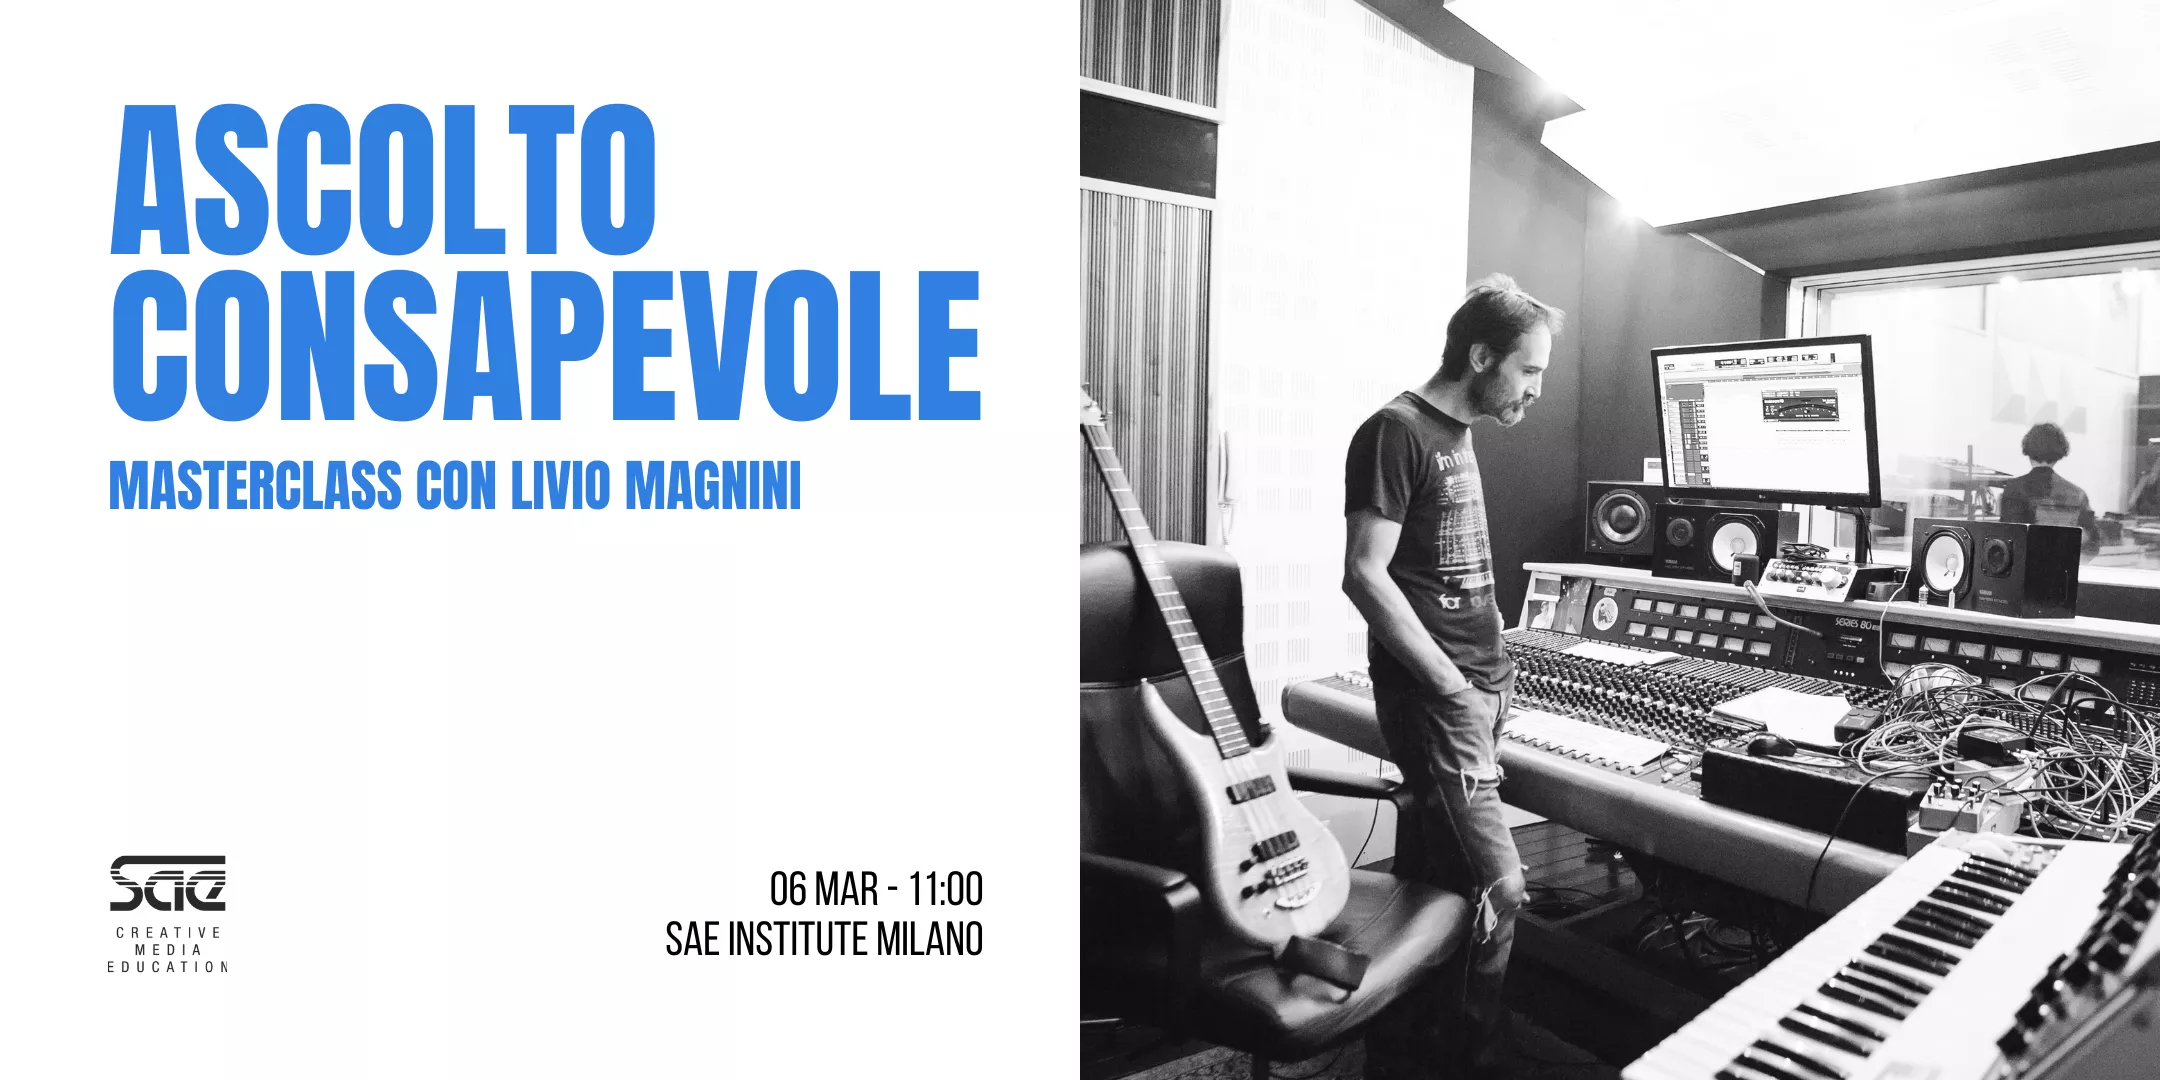 SAE Institute ospiterà l’esclusiva masterclass “Ascolto consapevole”, con il chitarrista dei Bluvertigo Livio Magnini